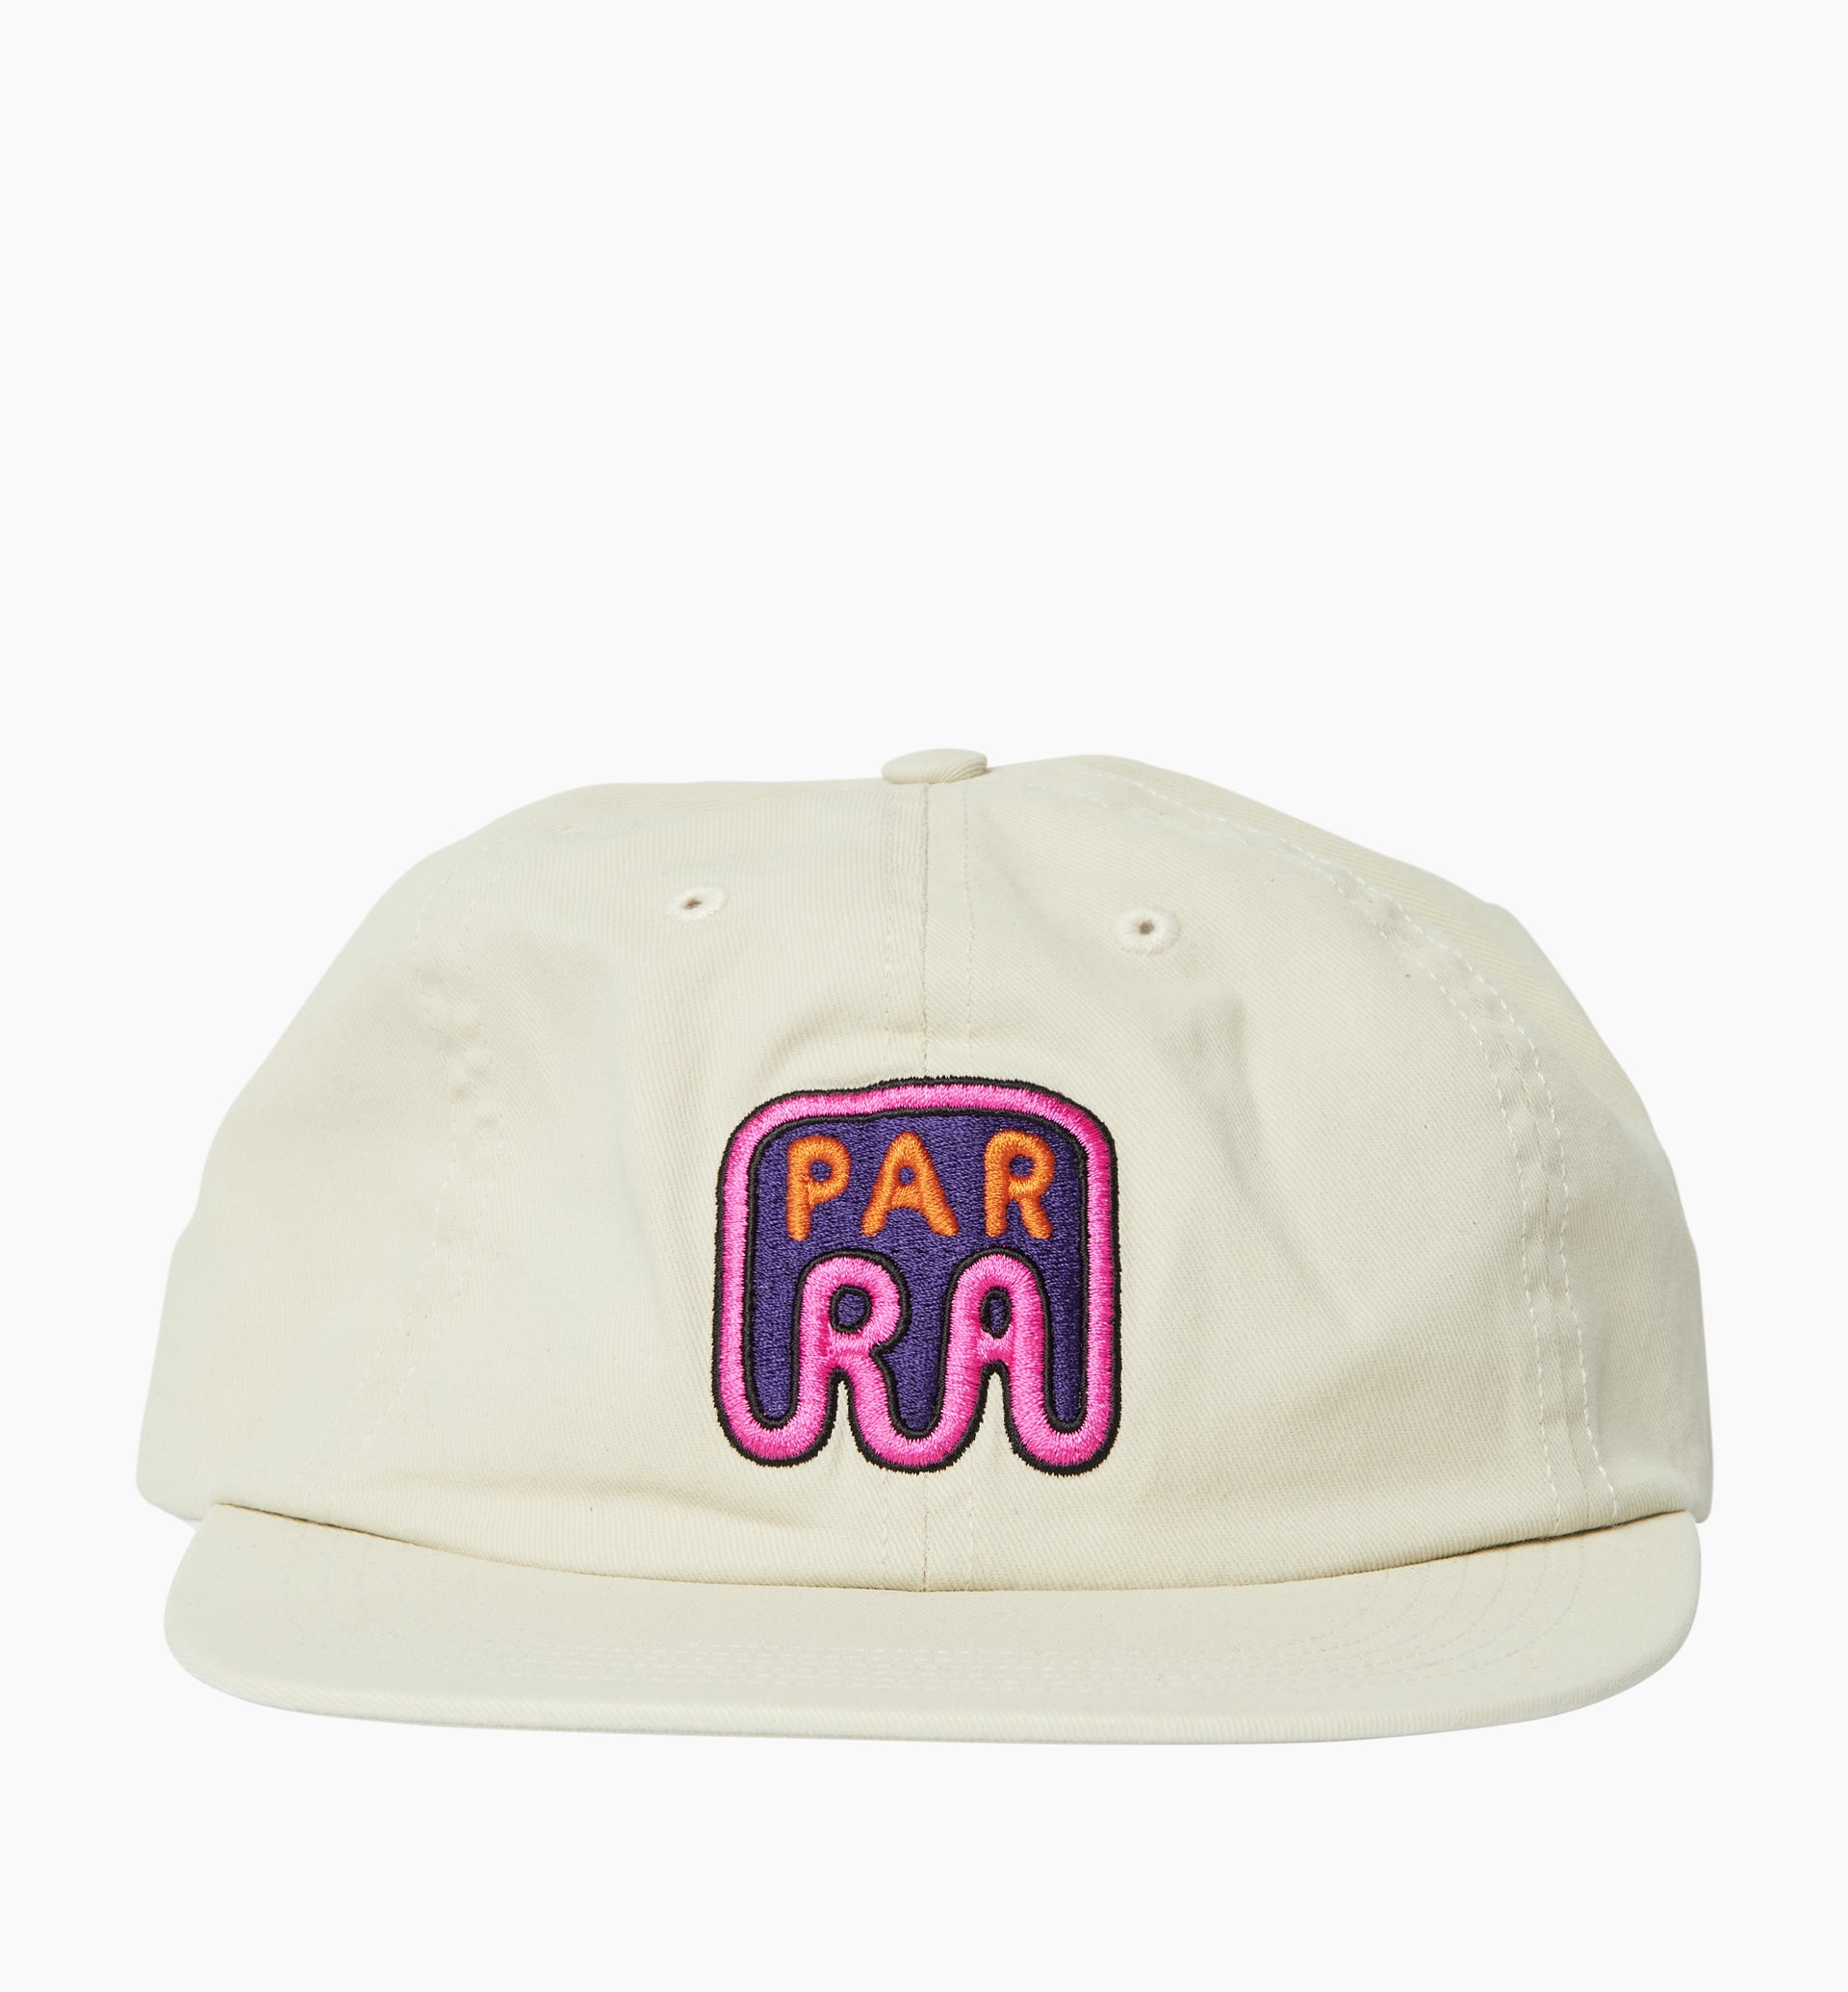 Parra - fast food logo 6 panel hat